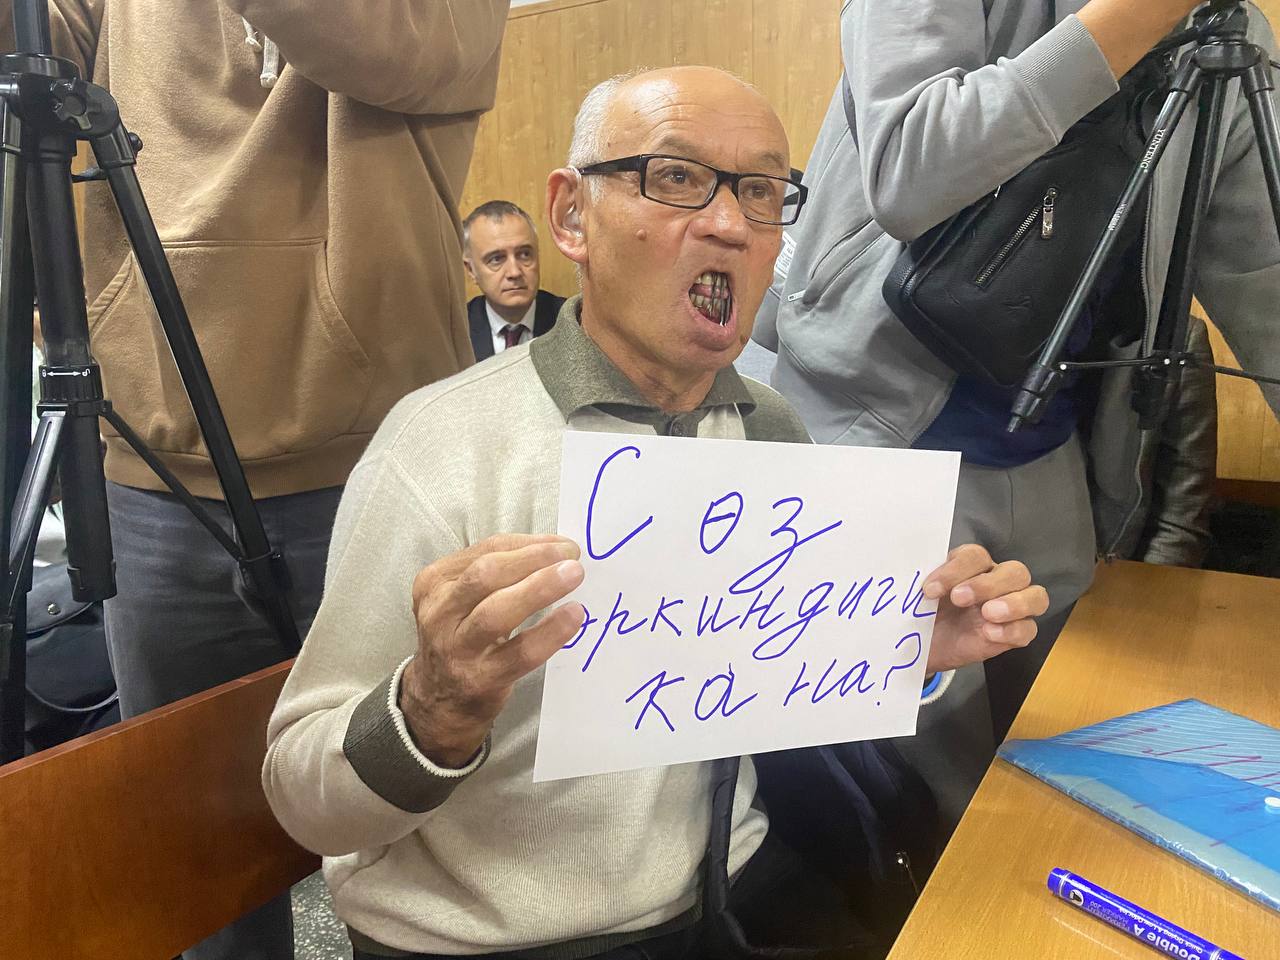 Одним кадром: Активист Токтонасыров интересуется, есть ли свобода слова в Кыргызстане